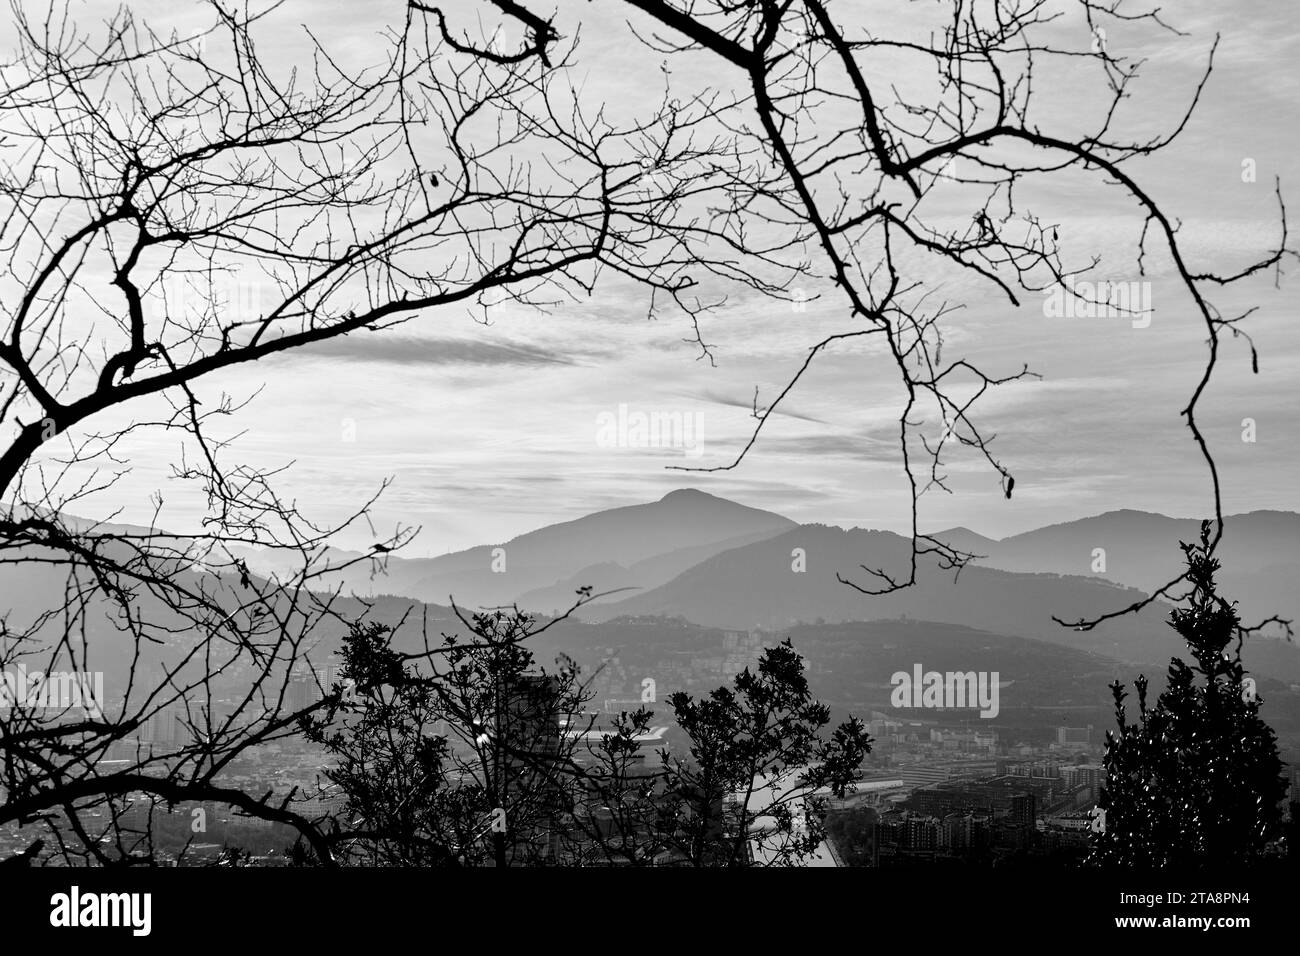 Vue en noir et blanc de la ville de Bilbao dans une composition artistique Banque D'Images